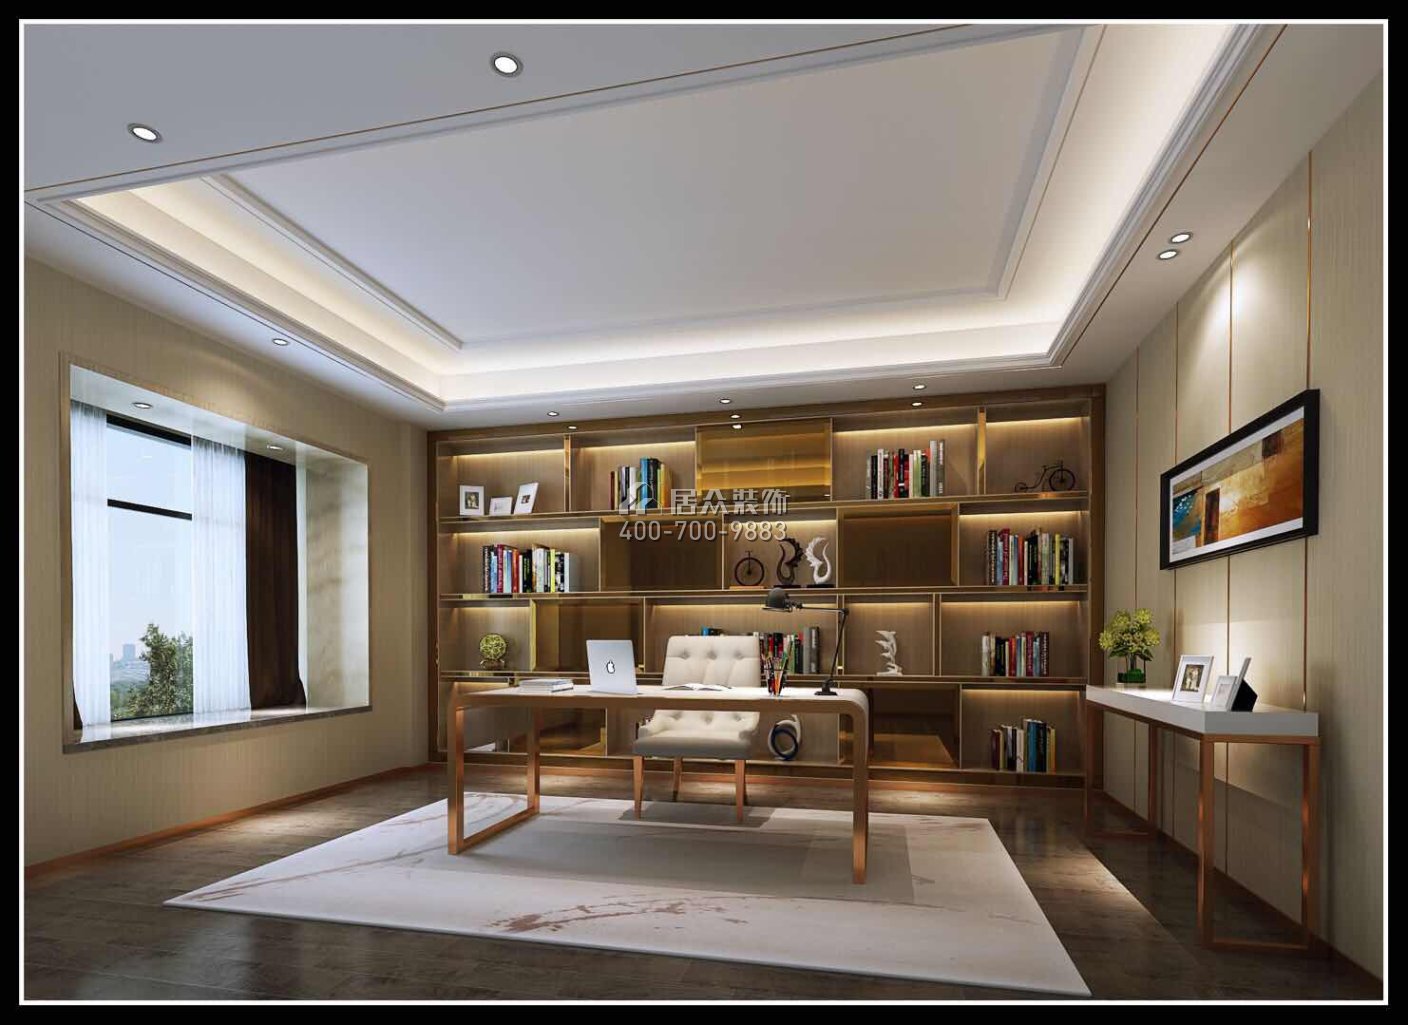 海御豪庭御峰322平方米現代簡約風格別墅戶型書房裝修效果圖